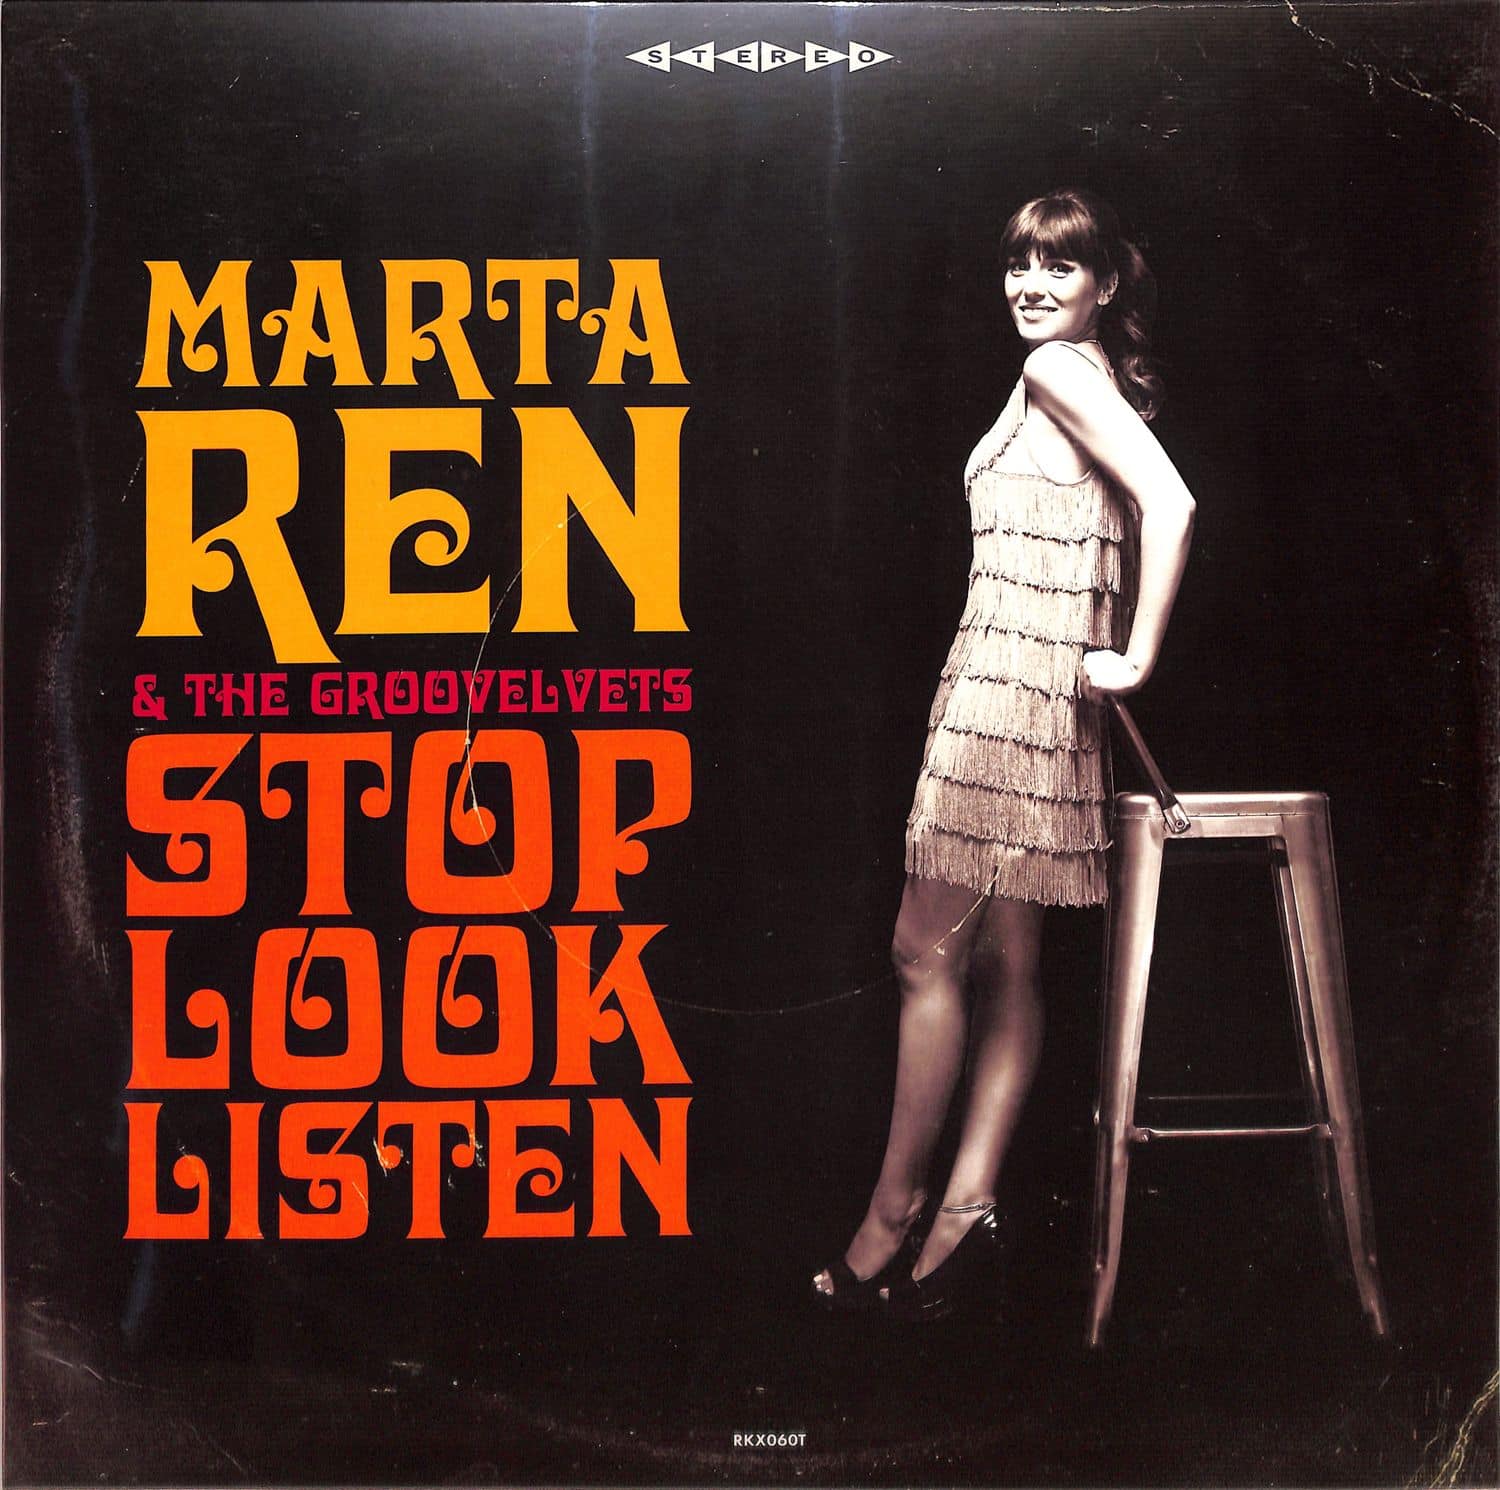 Marta Ren & The Groovelvets - STOP LOOK LISTEN 